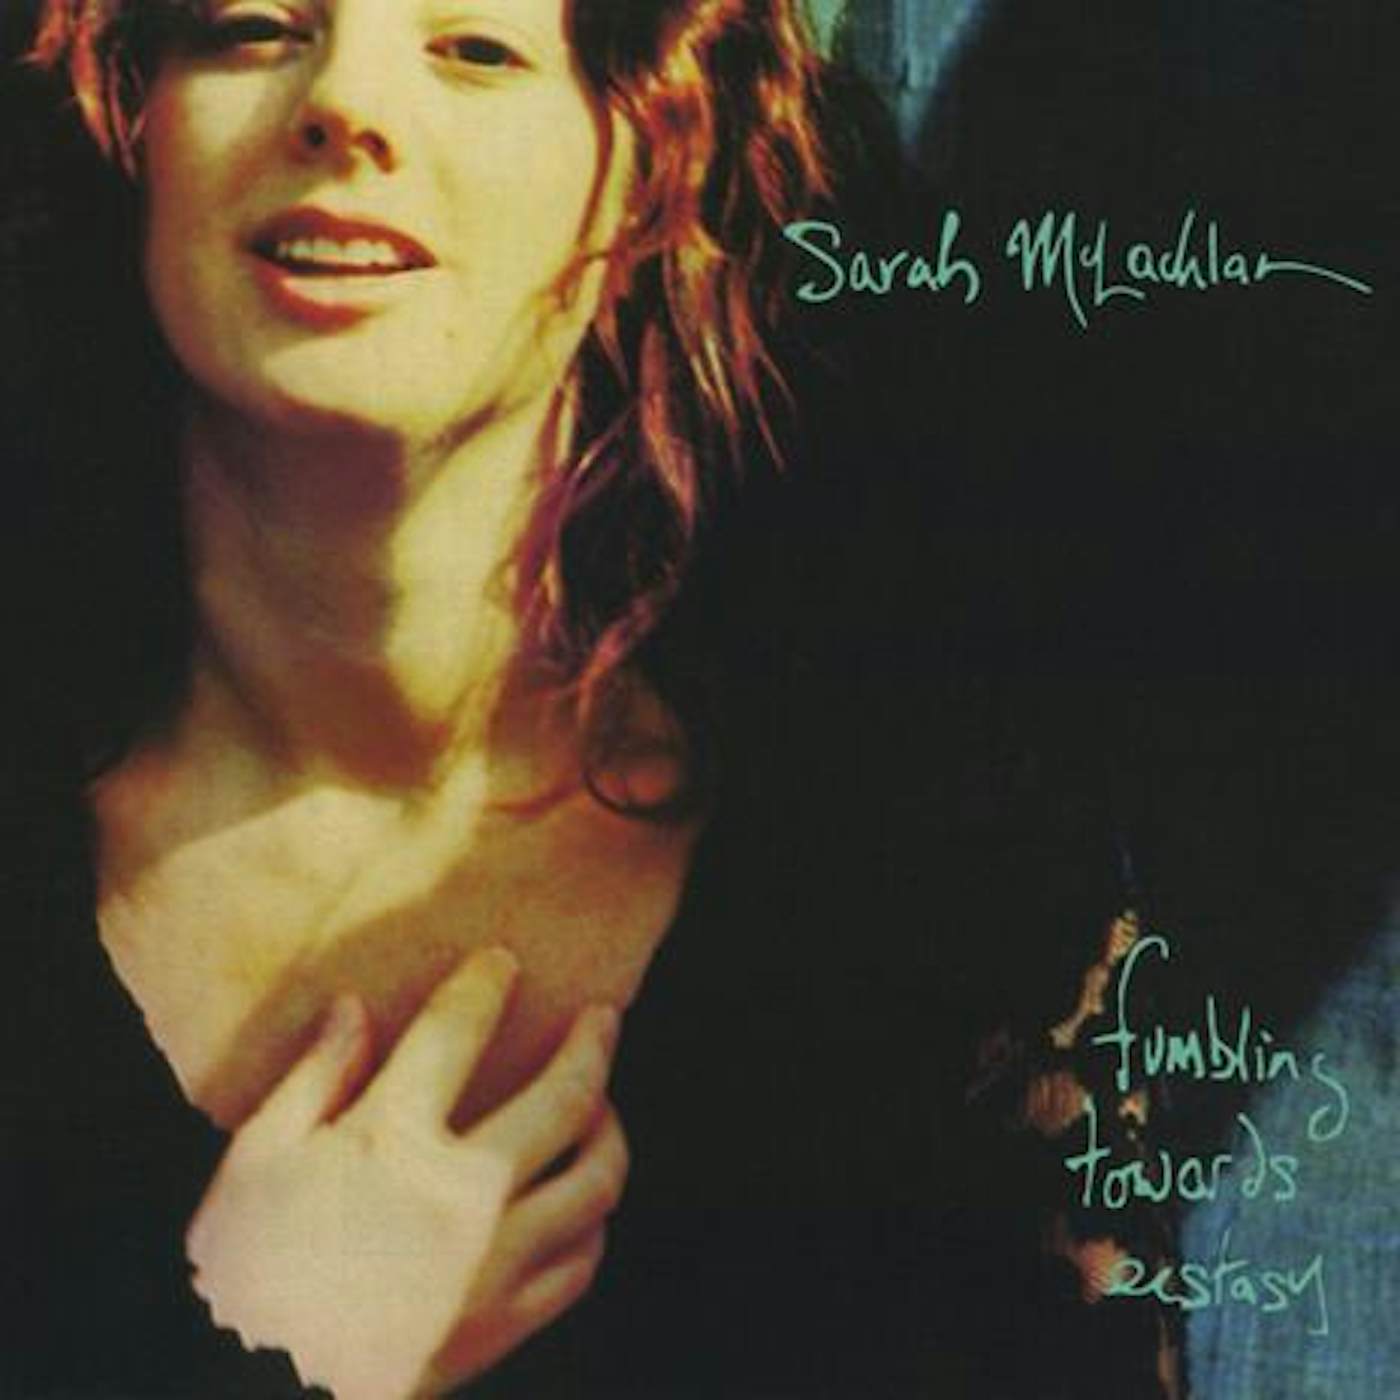 Sarah McLachlan FUMBLING TOWARDS ECSTACY (IMPORT) CD